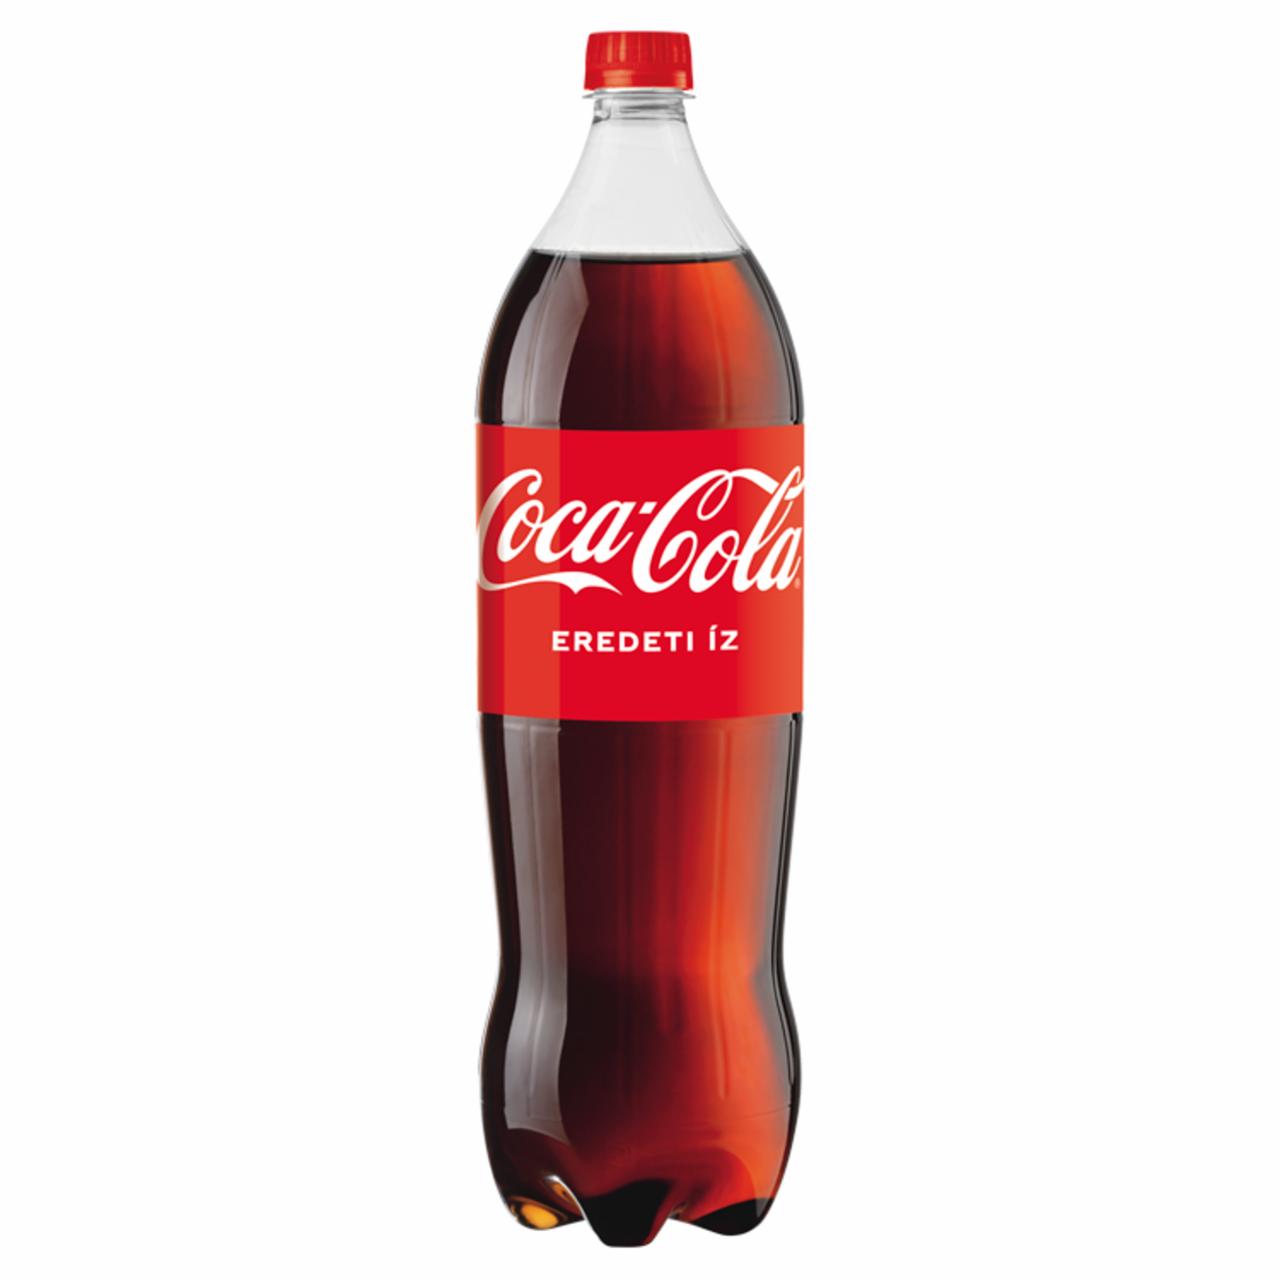 Képek - Coca-Cola colaízű szénsavas üdítőital 1,75 l